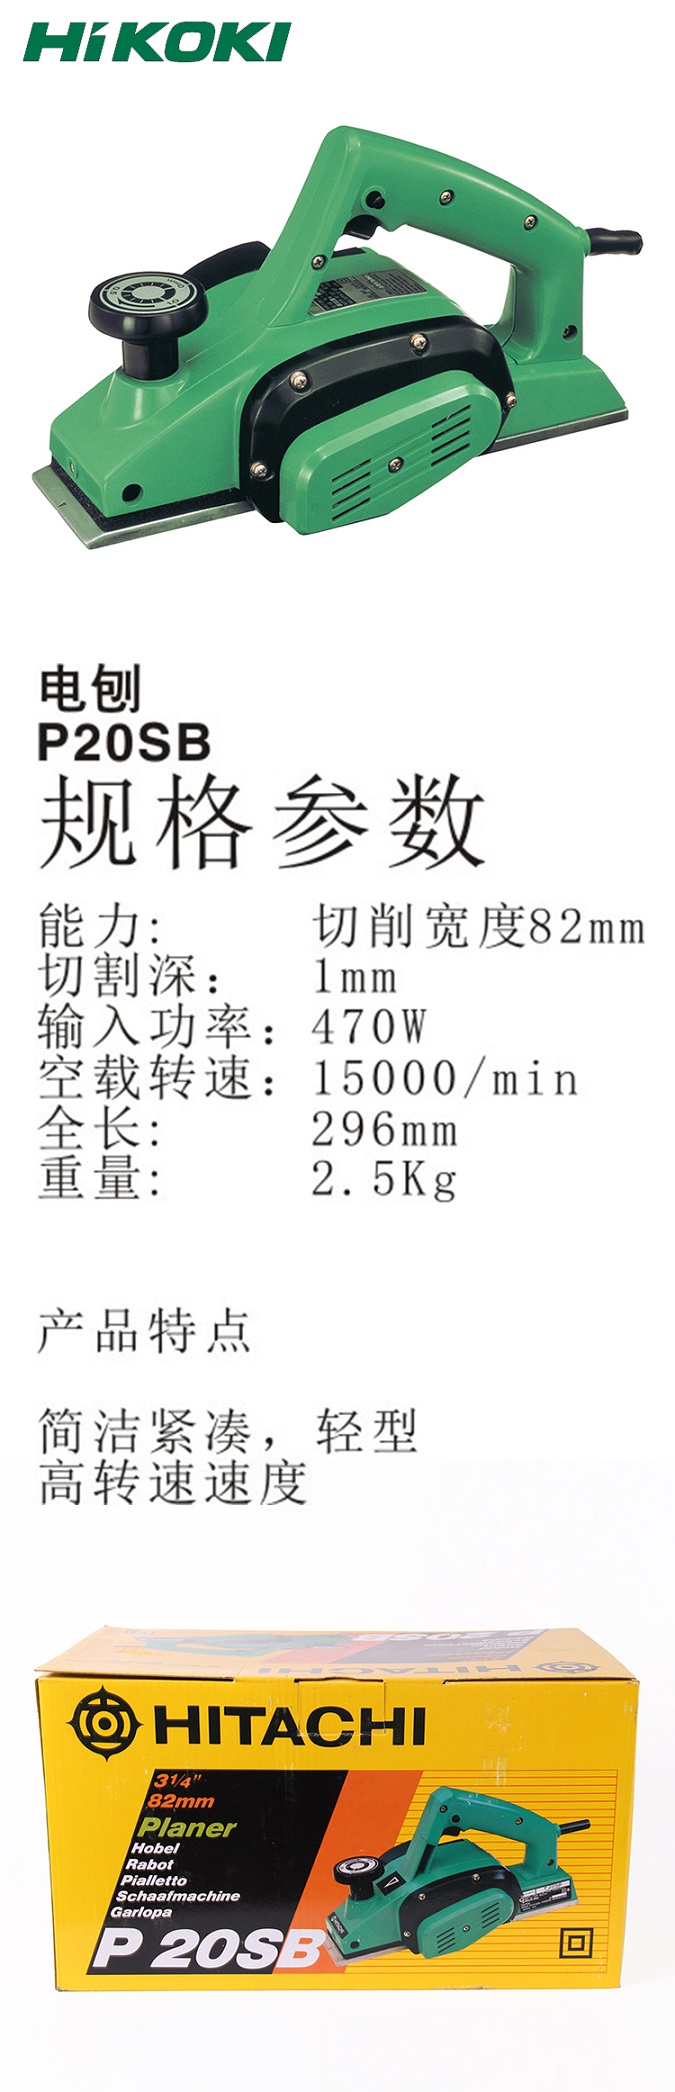 高壹电刨P20SB 470W.jpg